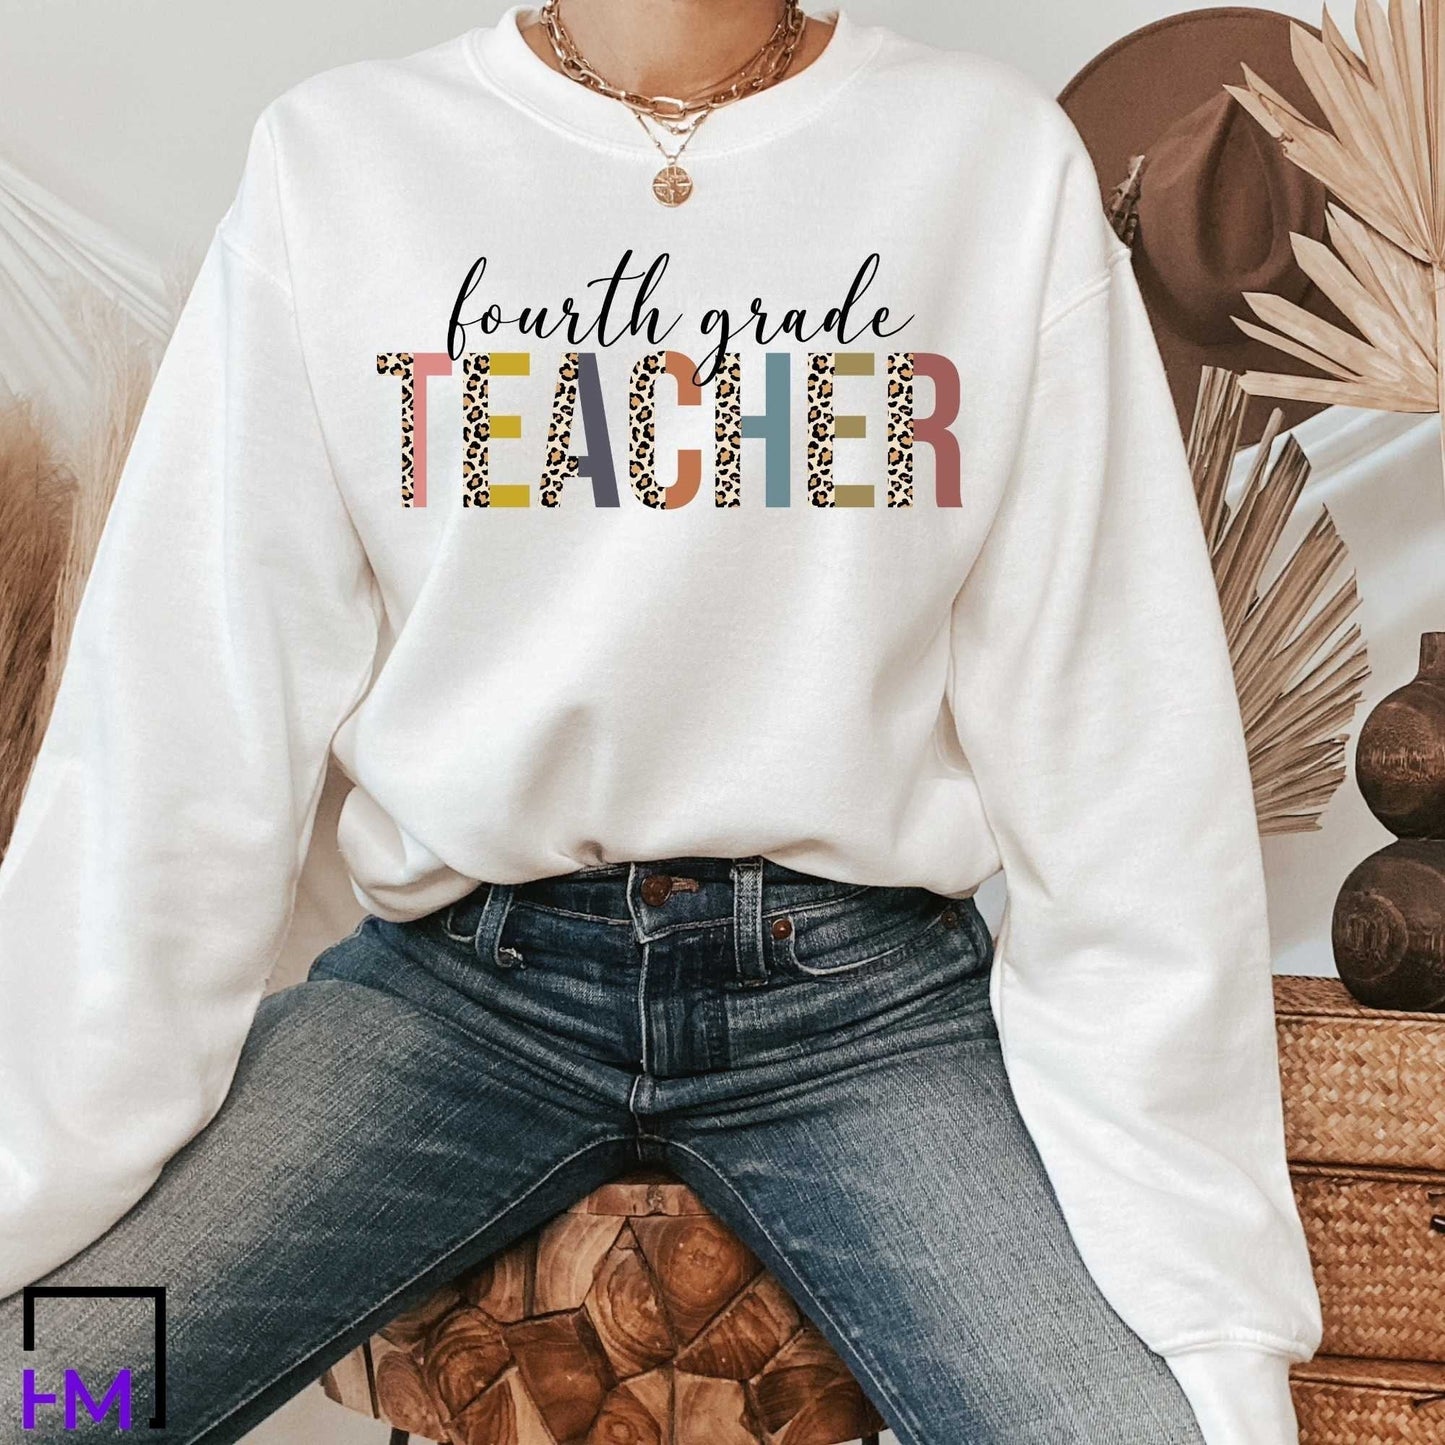 4th Grade Teacher Shirt, Great for New Teacher, Teacher Teams & Appreciation Gifts